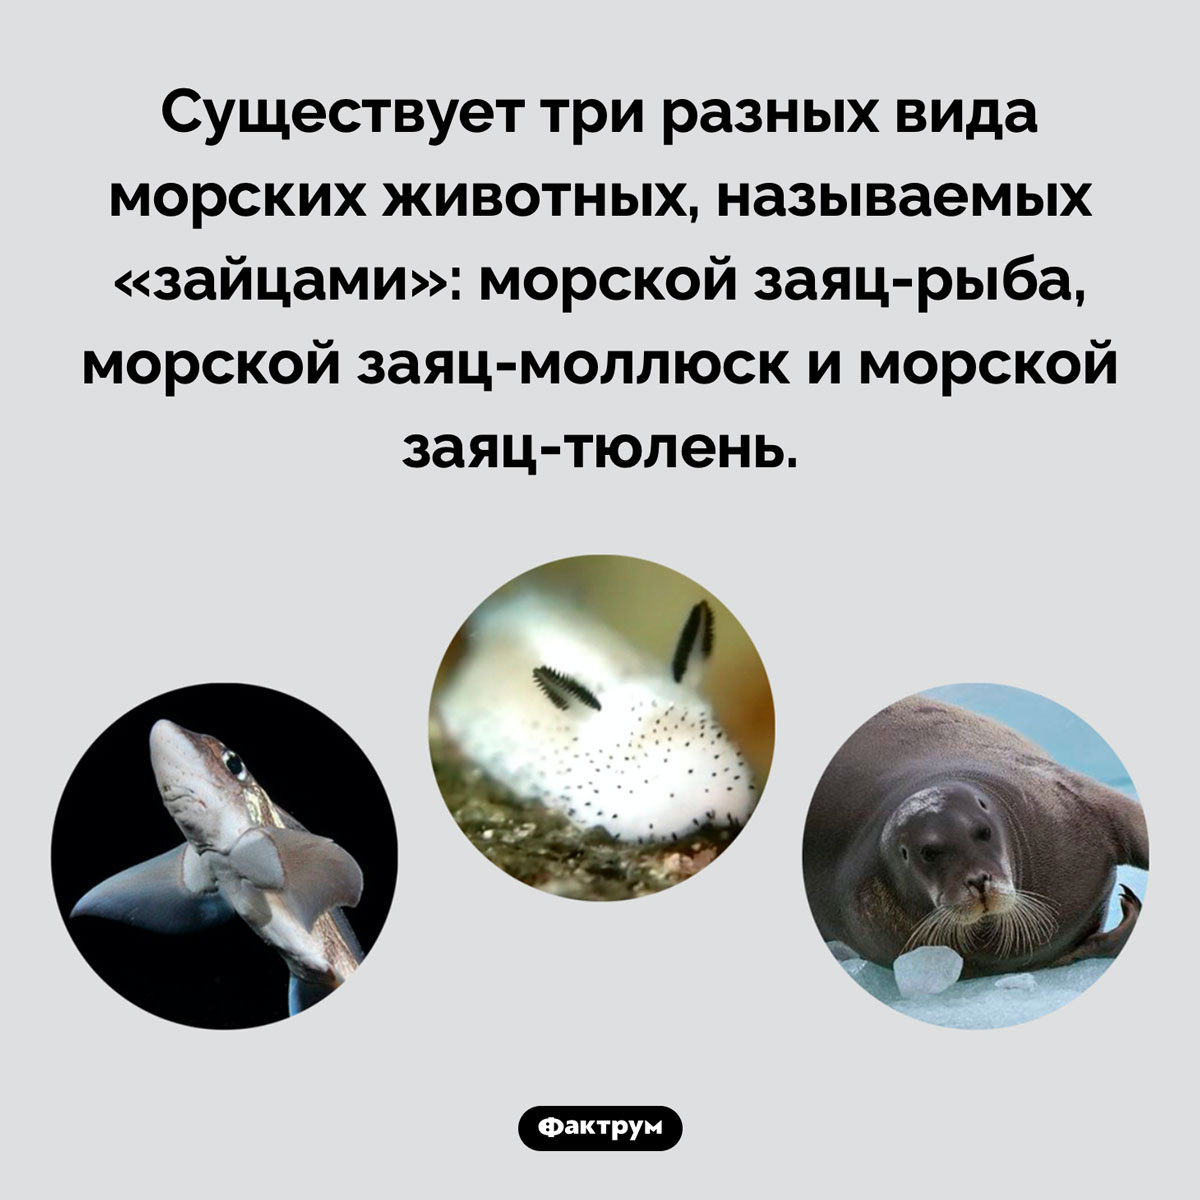 Разнообразные морские зайцы. Существует три разных вида морских животных, называемых «зайцами»: морской заяц-рыба, морской заяц-моллюск и морской заяц-тюлень.